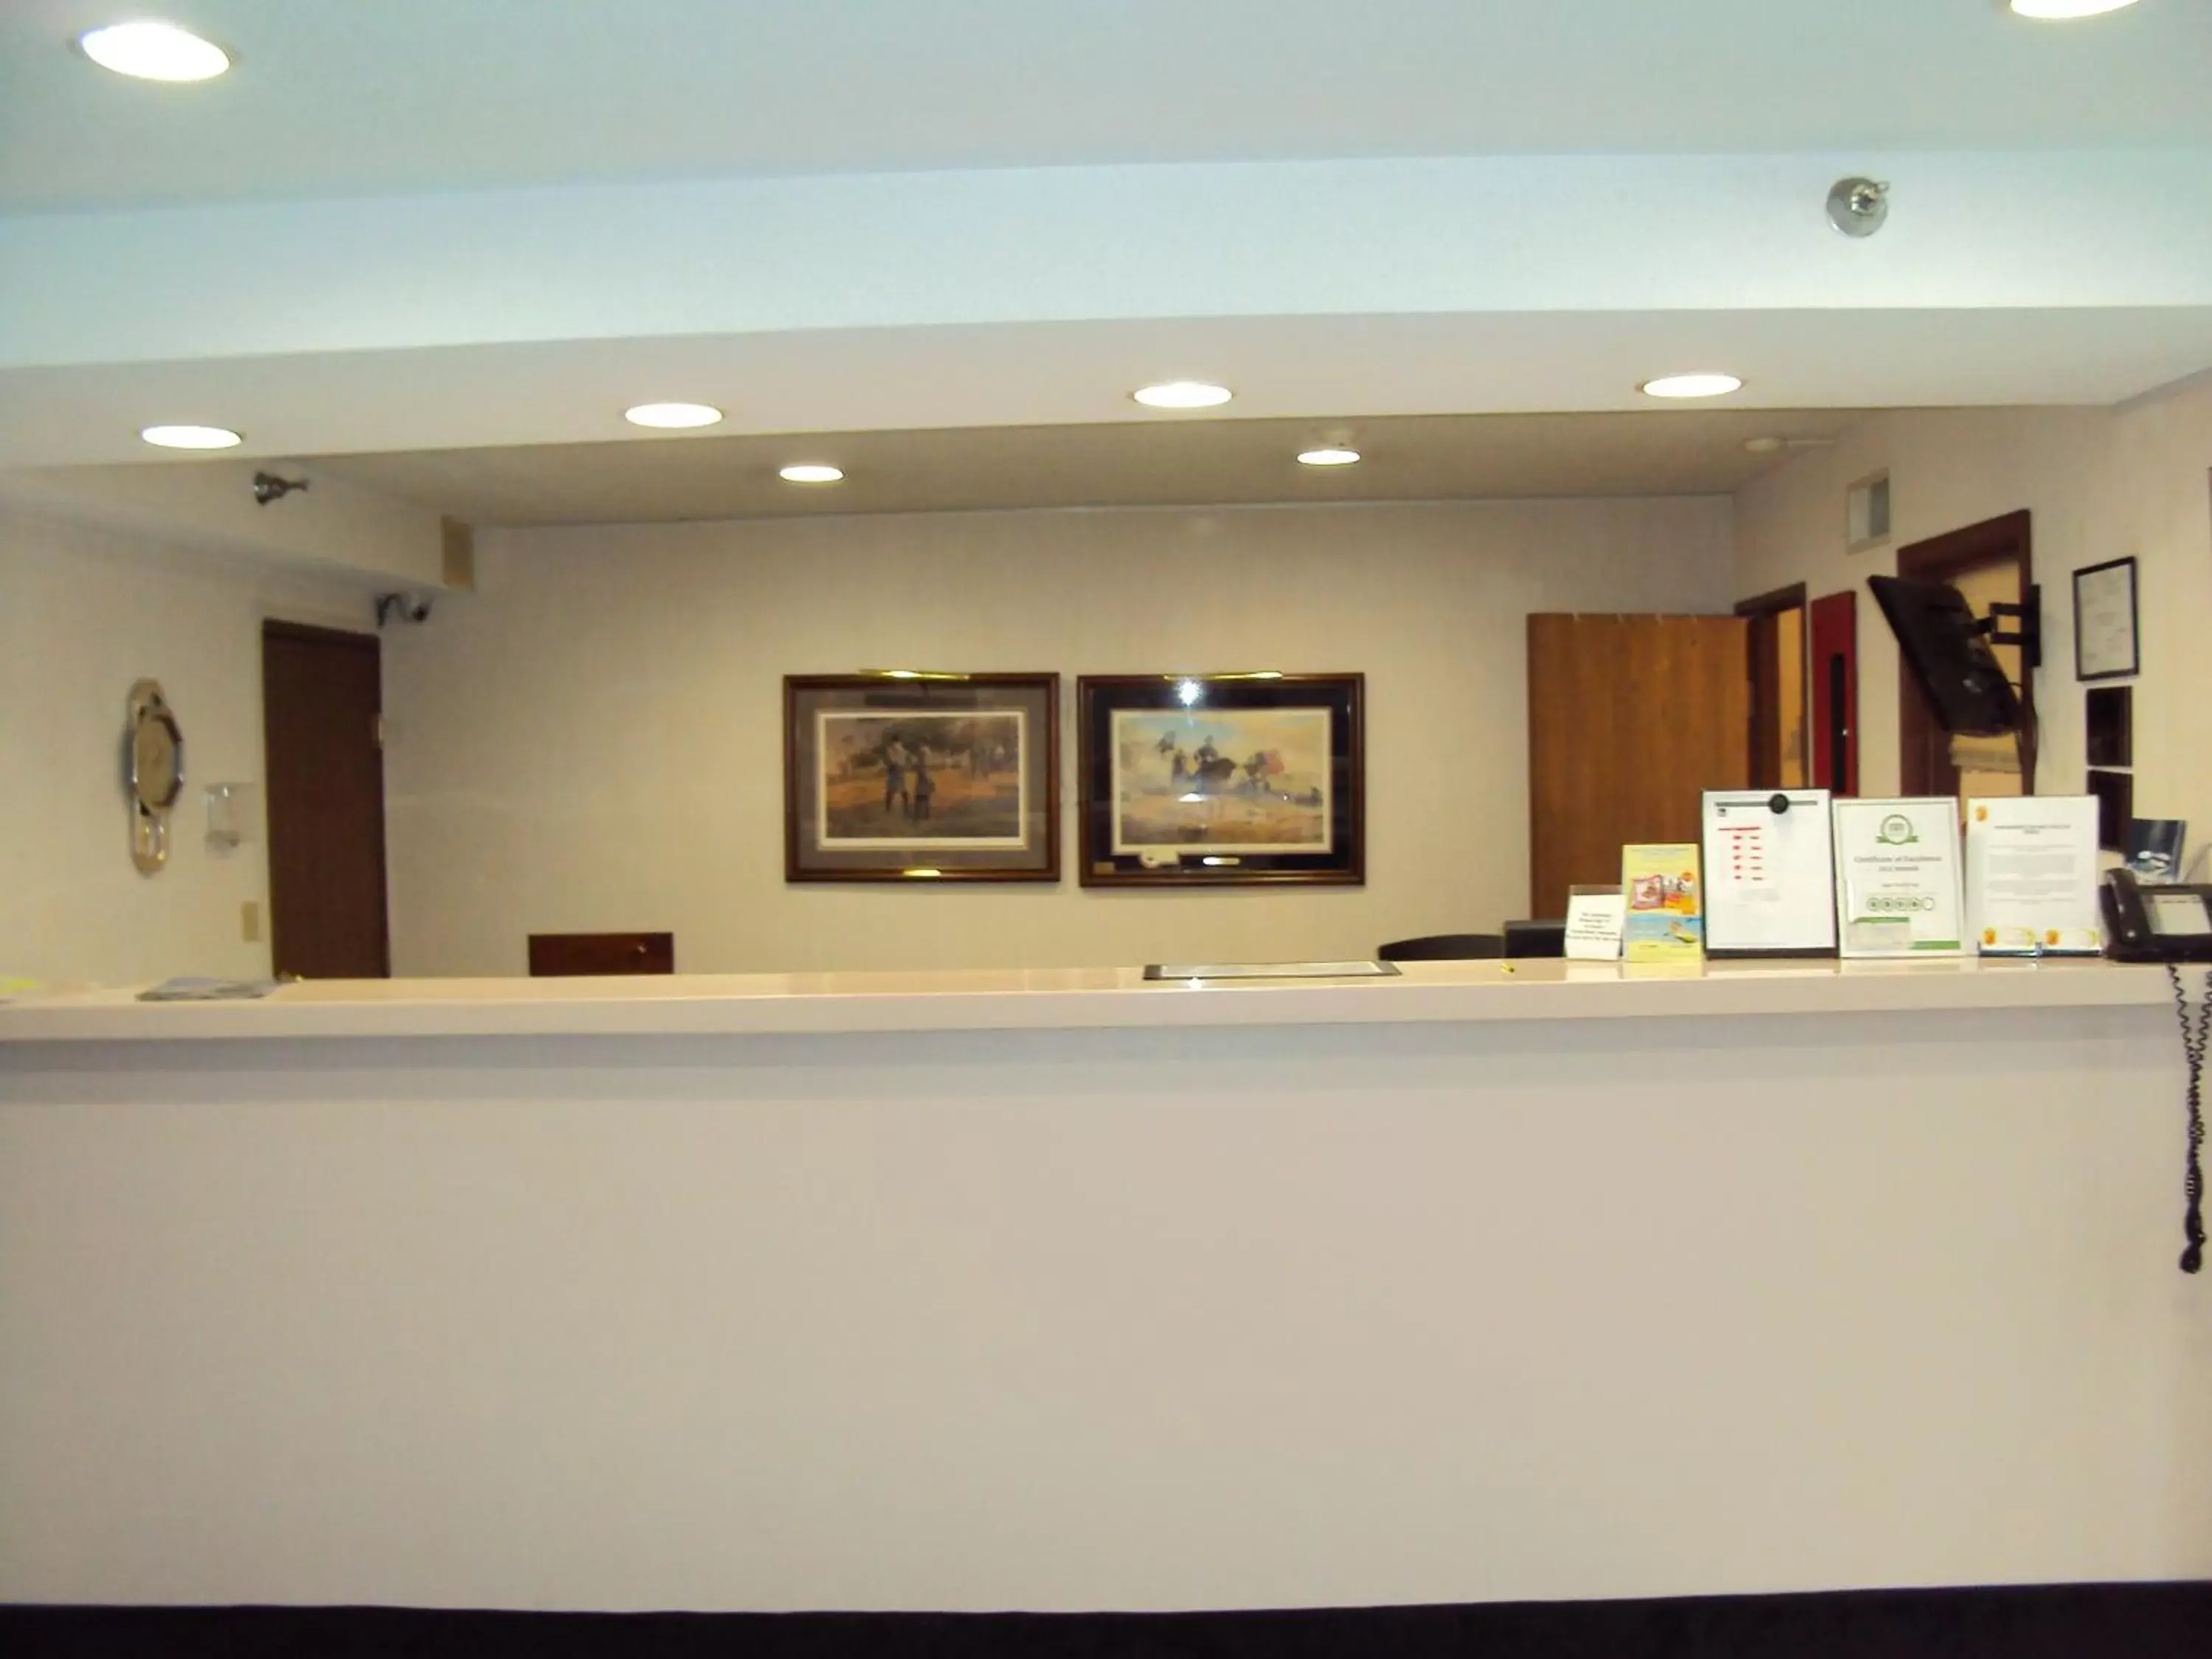 Lobby or reception, Lobby/Reception in Super 8 by Wyndham Gettysburg